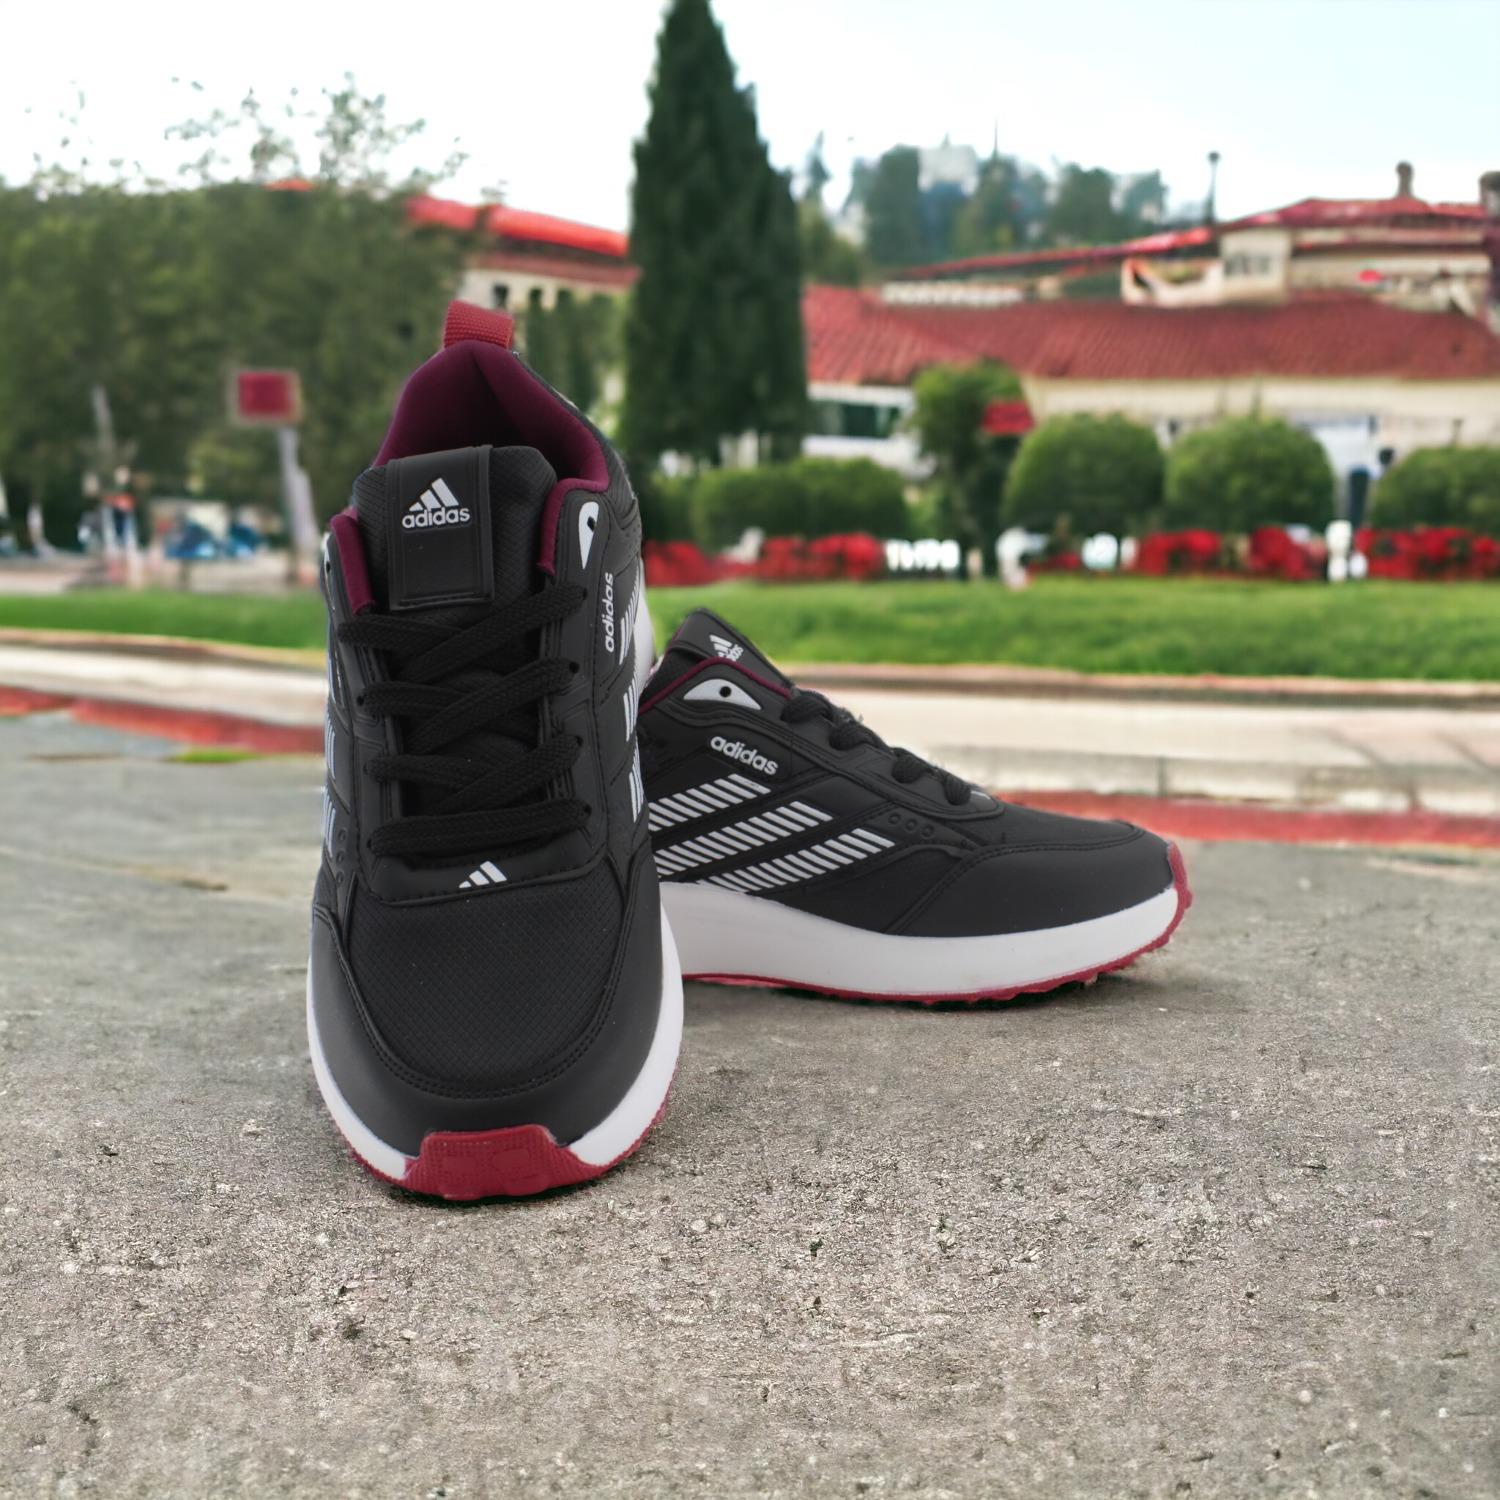 Adidas Siyah-Kırmızı Beyaz Kesik Çizgili Kadın Ayakkabı